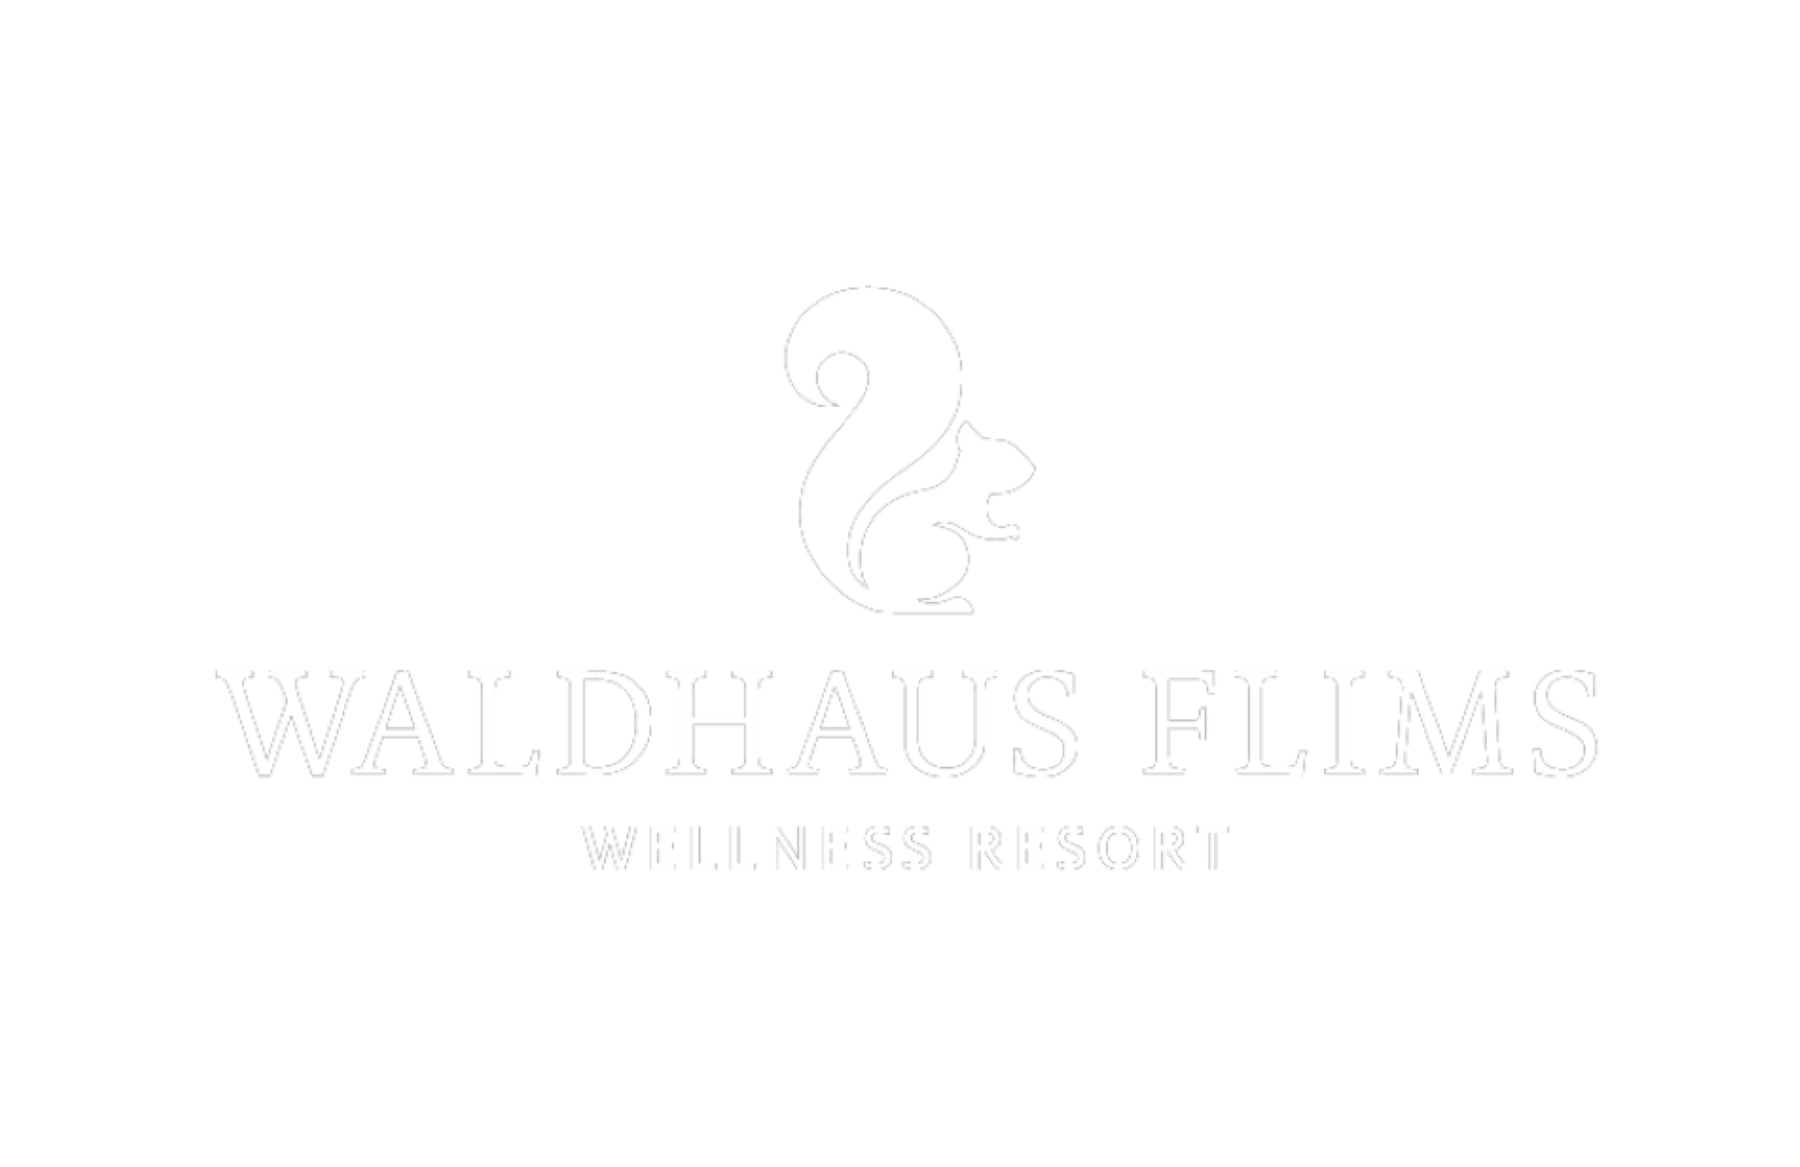 فالدهاوس فليمز منتجع صحي للعافية logo